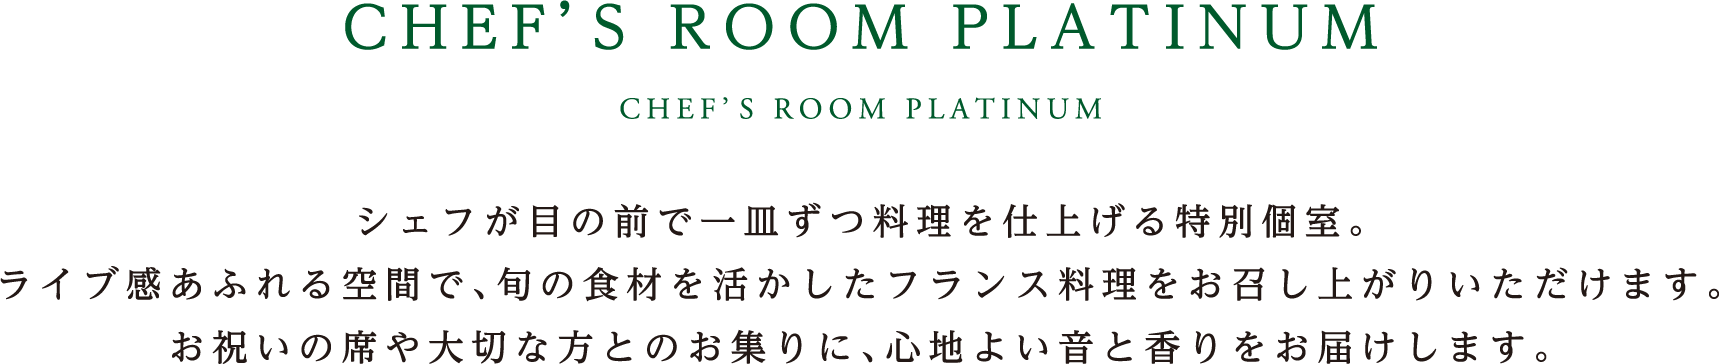 CHEF’S ROOM PLATINUM